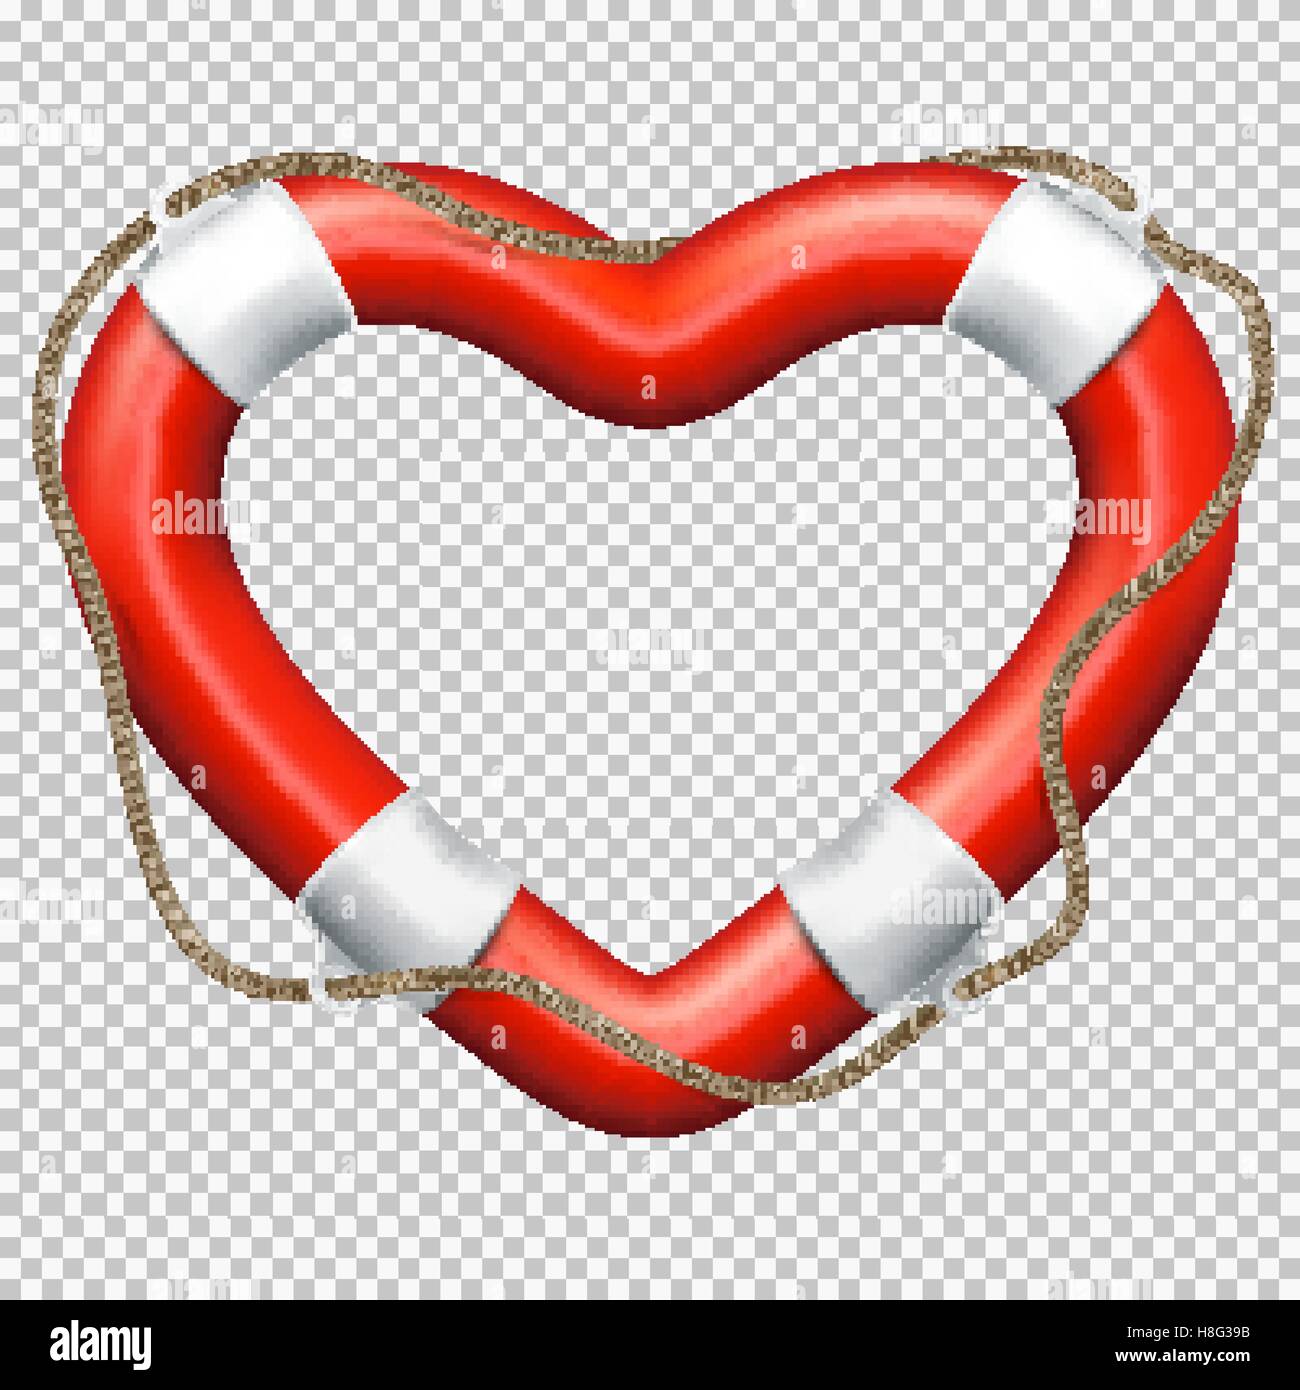 Heart Lifebuoy. EPS 10 Stock Vector